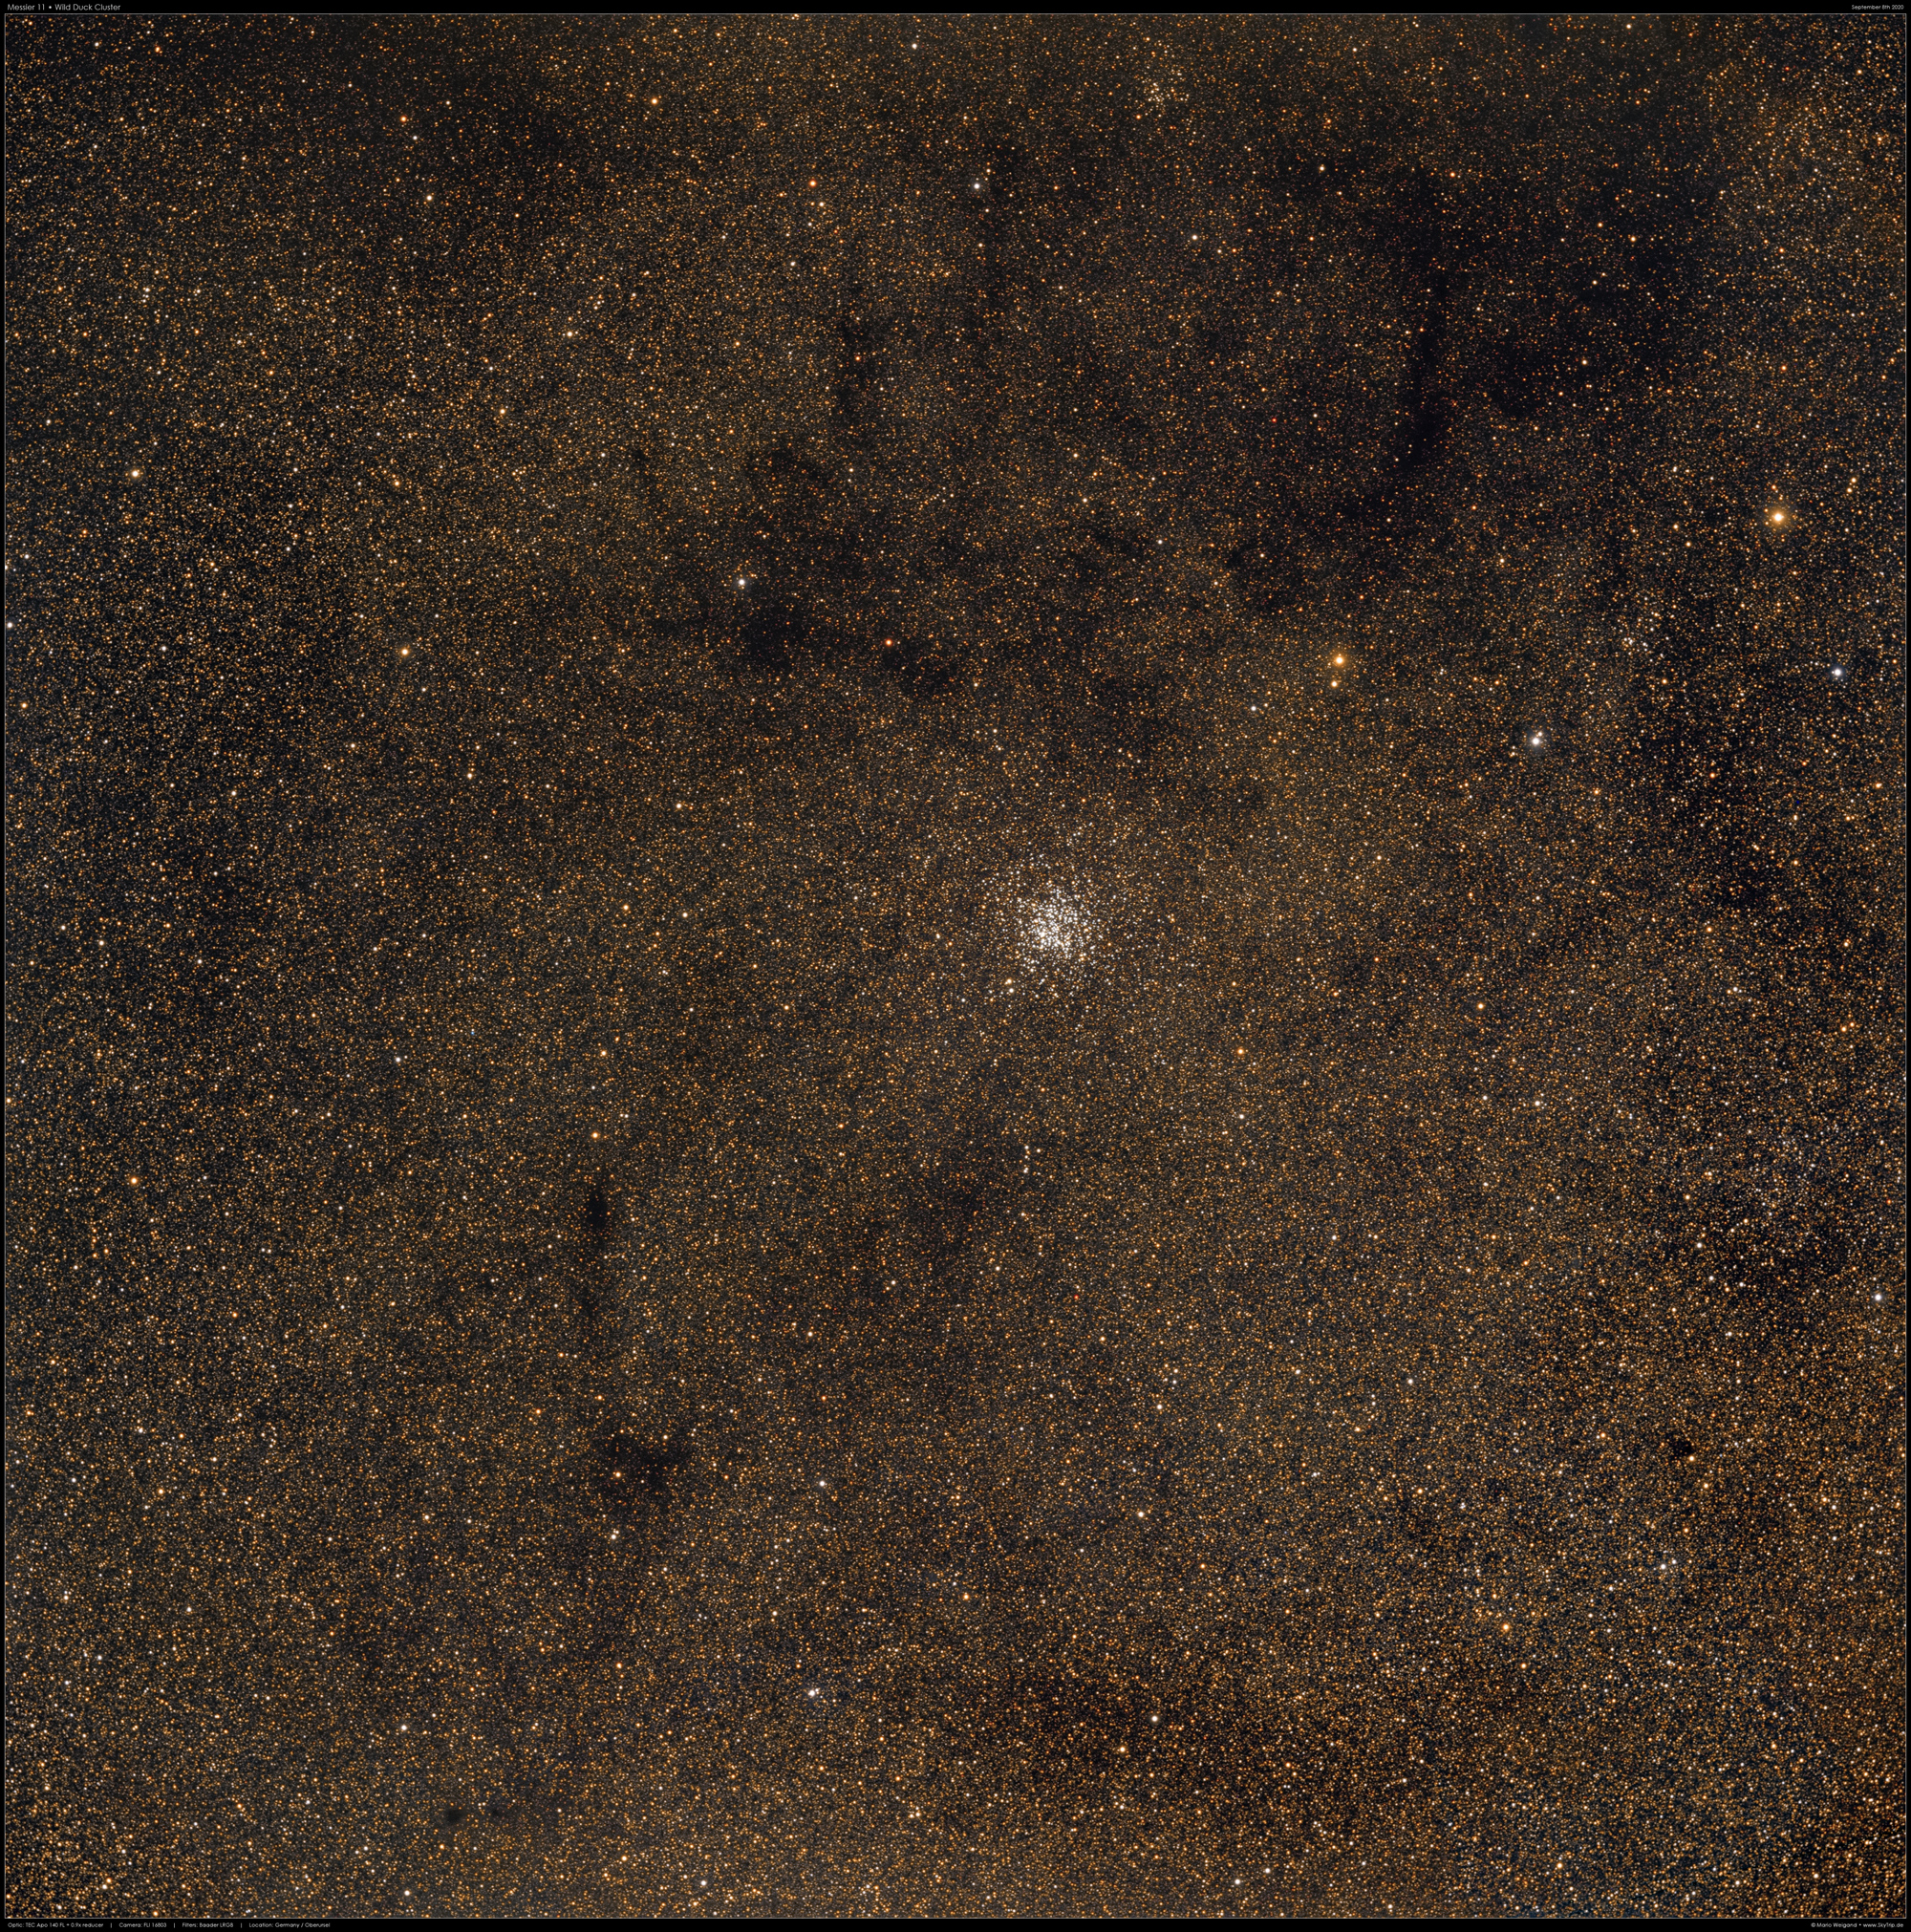 Messier 11 Wildentenhaufen